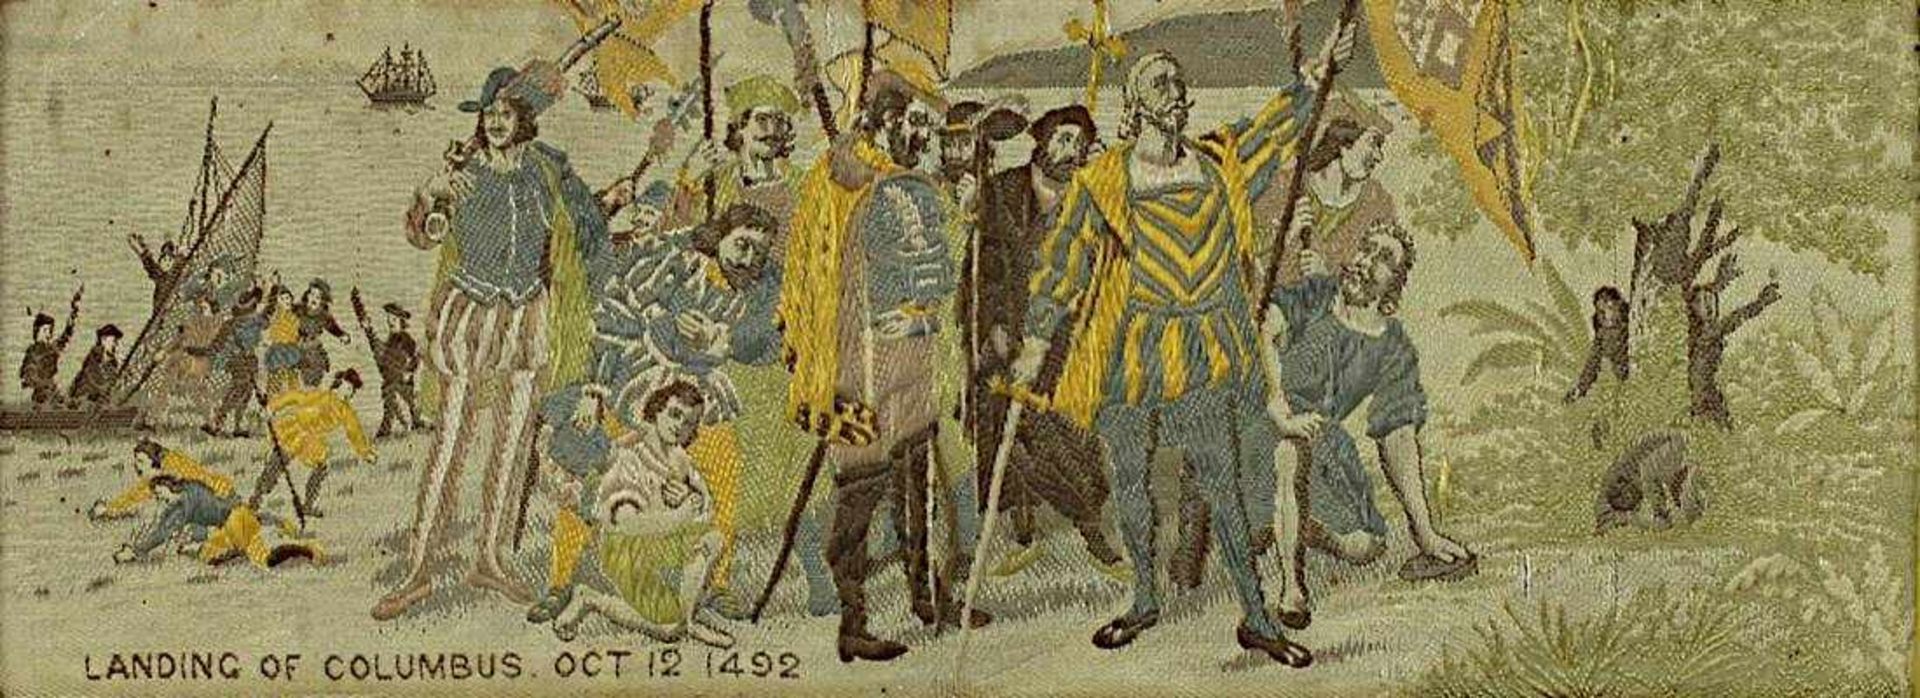 2 Seidenbilder zu Columbus' Enteckung Amerikas, angefertigt zur Weltausstellung Chicago 1893, - Bild 5 aus 5